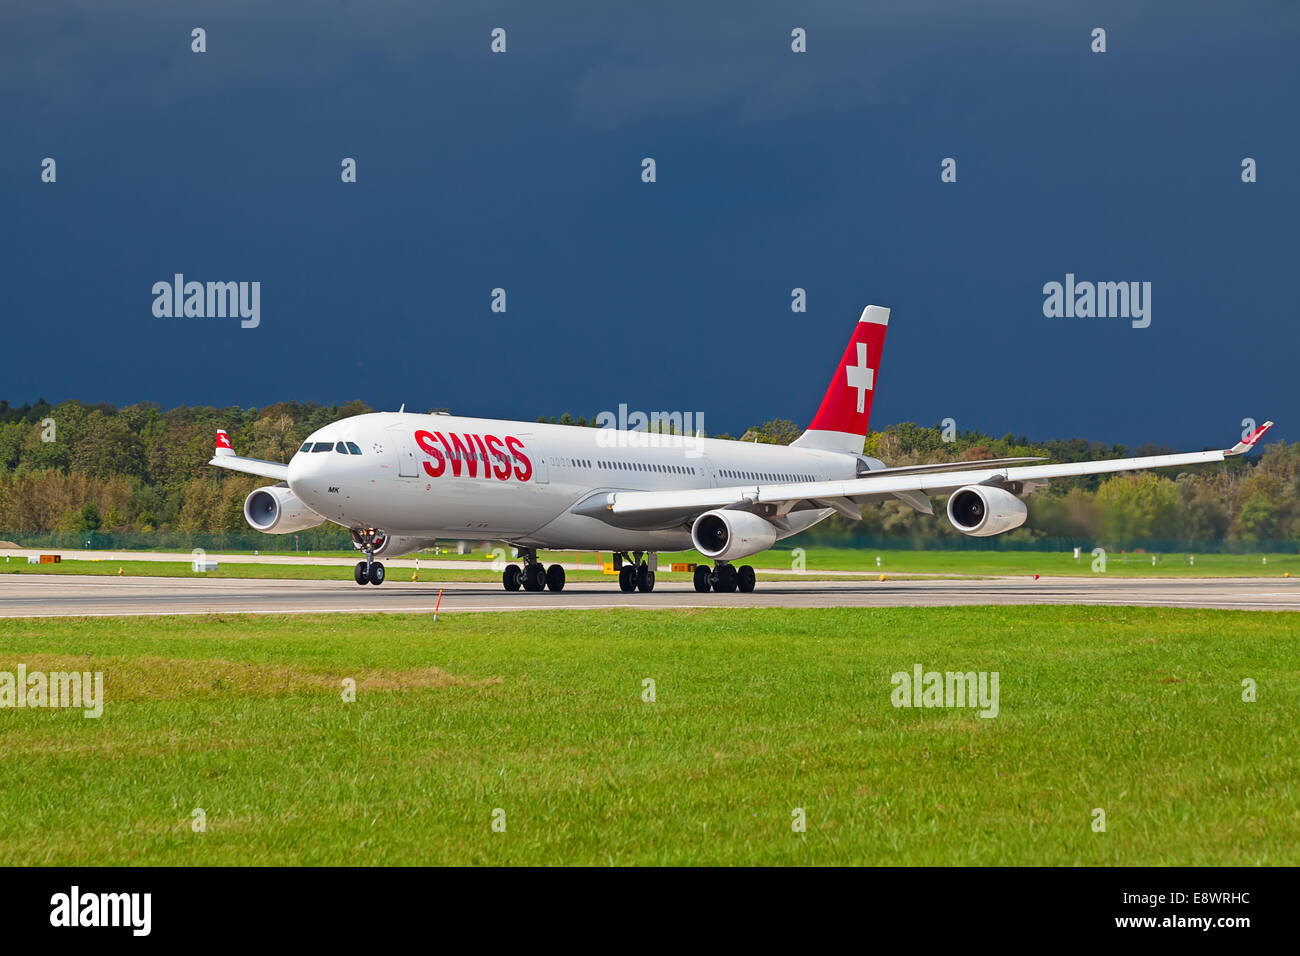 ZURICH - SEPTEMBRE 21:Swiss Airlines Airbus A340 qui décolle le 21 septembre 2014 à Zurich, Suisse. Un International de Zurich Banque D'Images